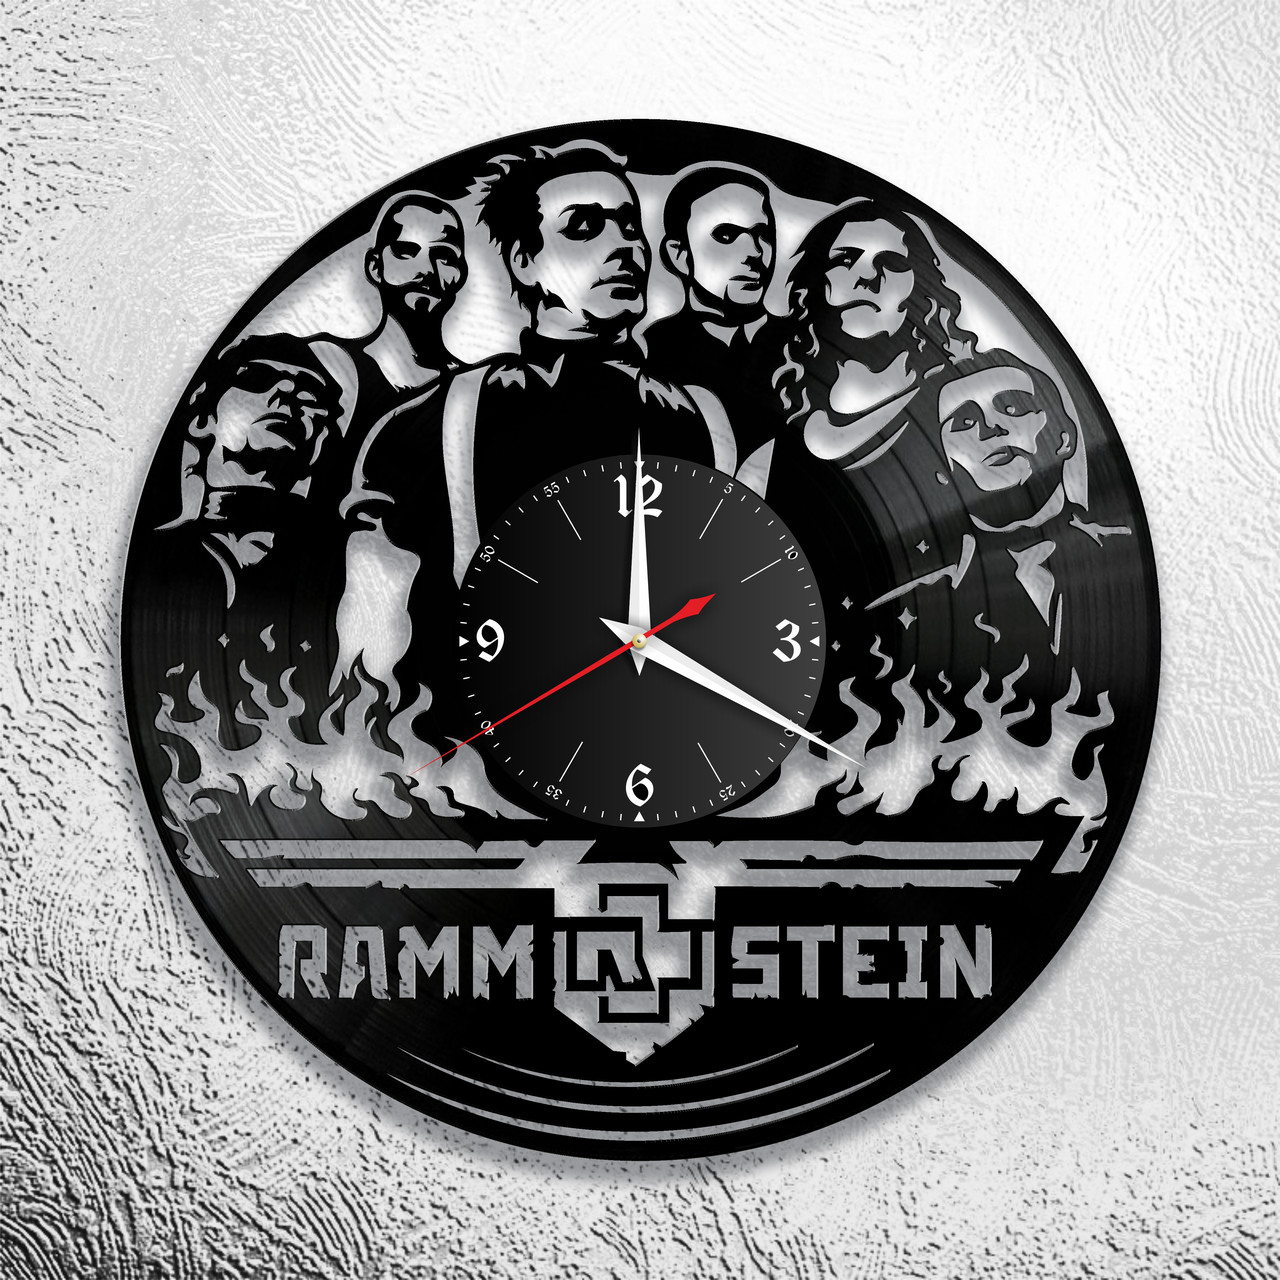 Оригинальные часы из виниловых пластинок "Rammstein"  версия 2, фото 1